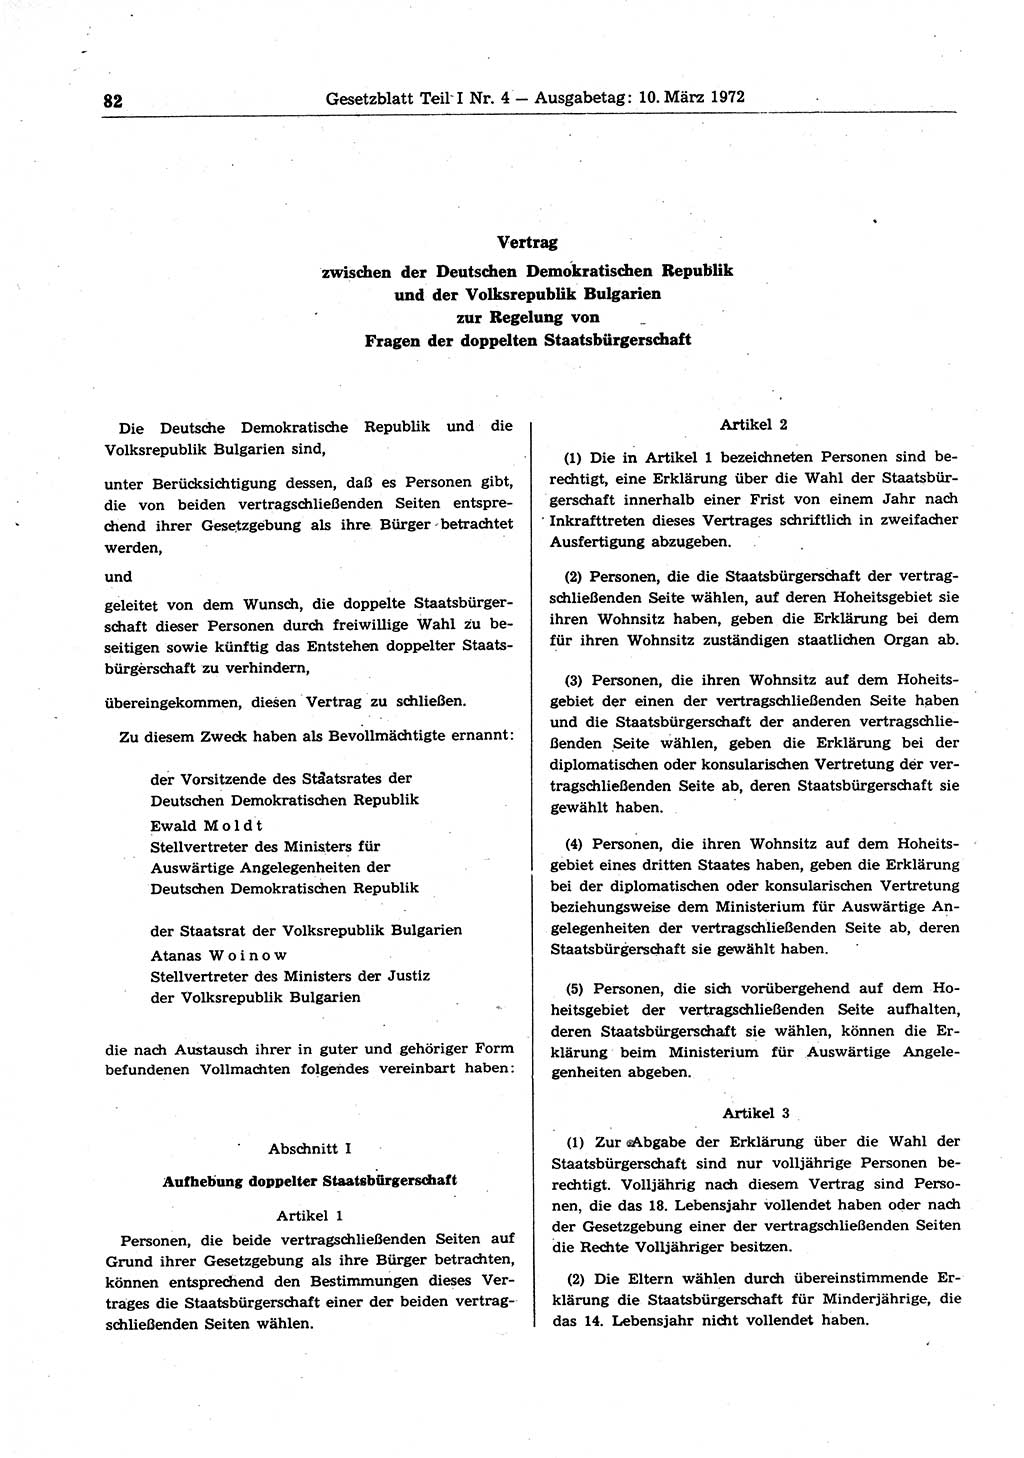 Gesetzblatt (GBl.) der Deutschen Demokratischen Republik (DDR) Teil Ⅰ 1972, Seite 82 (GBl. DDR Ⅰ 1972, S. 82)